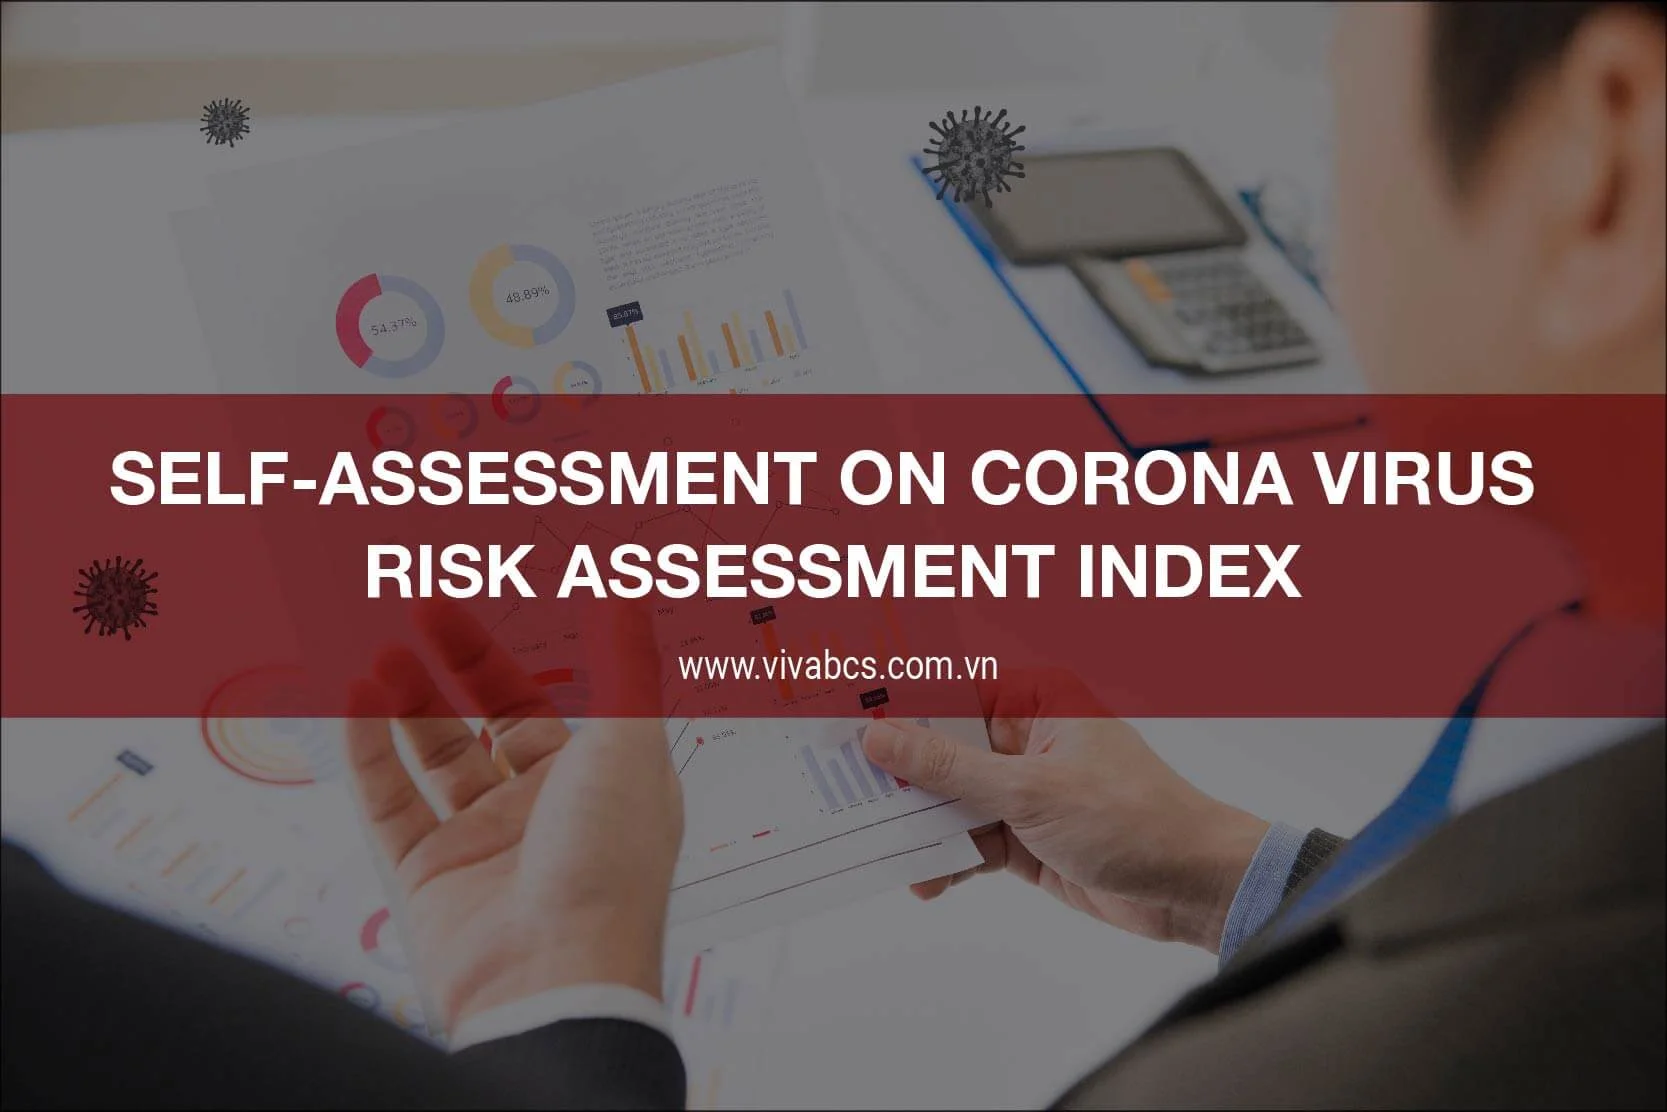 Corona virus risk assessment index